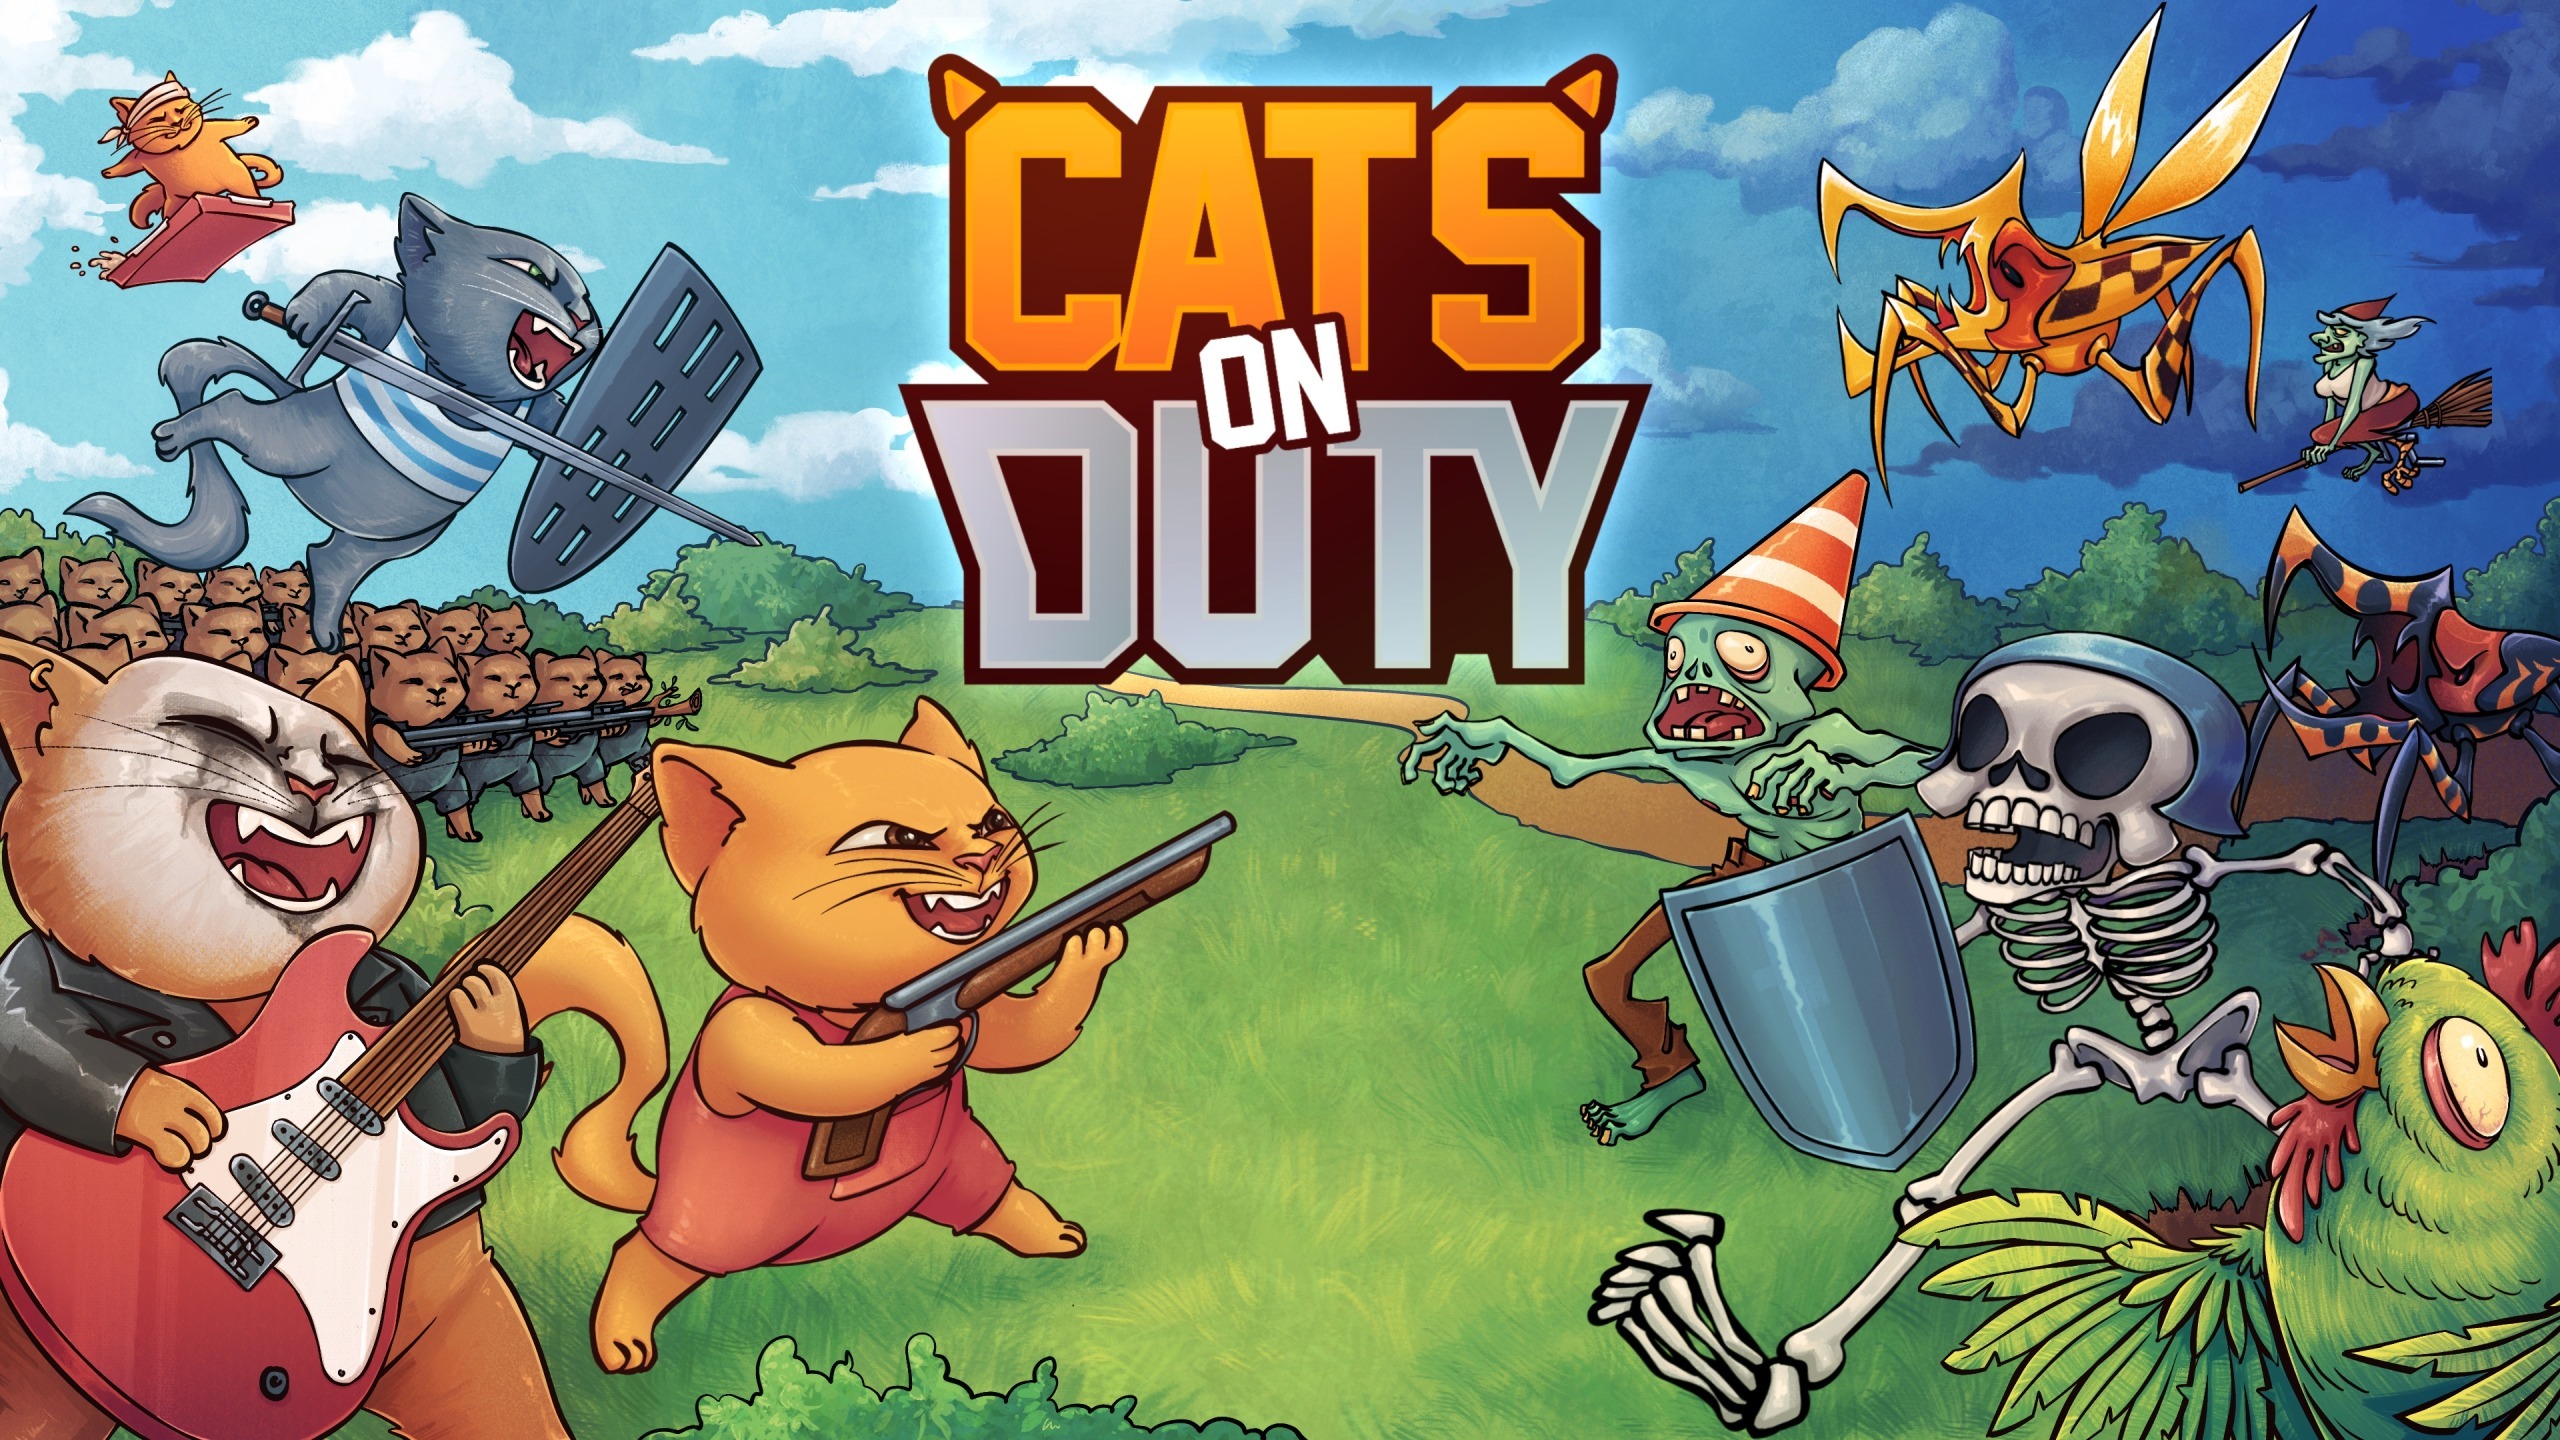 ネコのひげパワーを解き放ち、クリーチャーから故郷を守り抜け！
タワーディフェンス系RTS『Cats on Duty』の日本語版を
2024年内にNintendo Switch(TM)、PlayStation(R)4、
PlayStation(R)5で発売予定